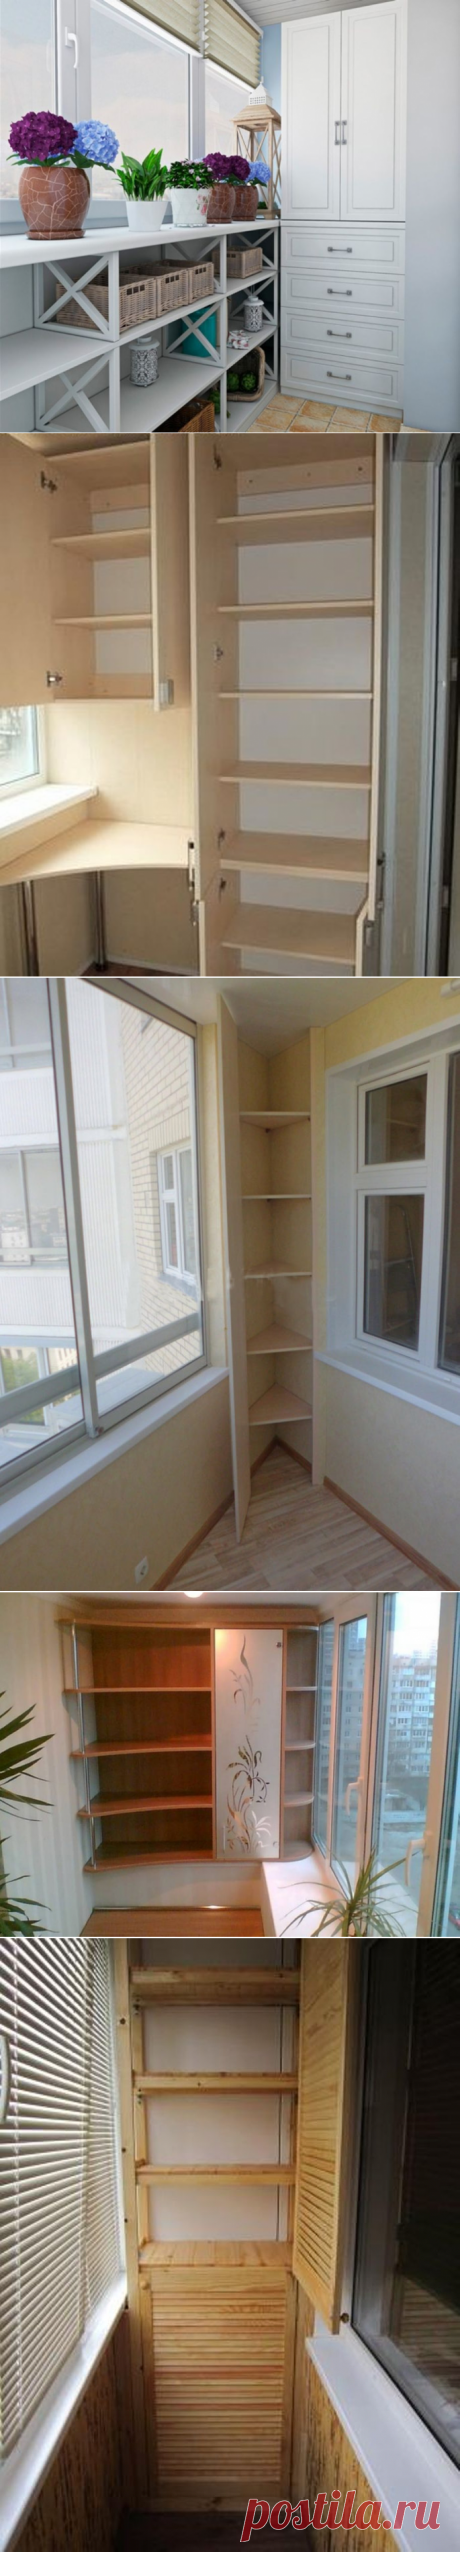 Шкафчики на балконе: 40 уютных идей для обустройства - Ярмарка Мастеров - ручная работа, handmade